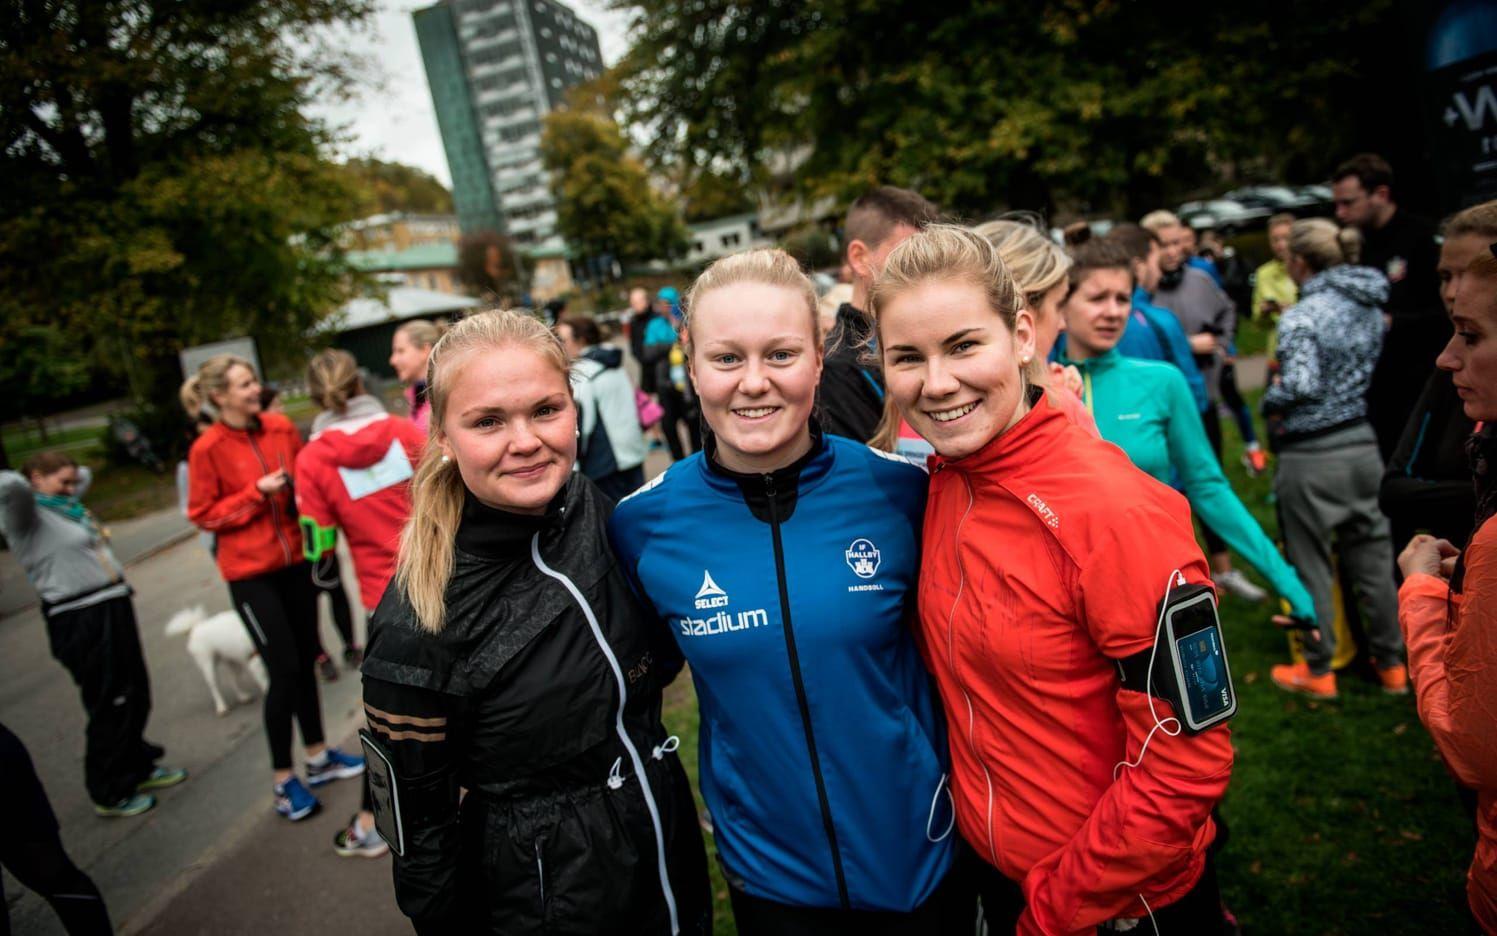 Joanna Dahlgren, Ebba Johansson och Charlotta Nilsson sprang två varv på den 2,5 kilometer långa banan. Bild: Olof Ohlsson